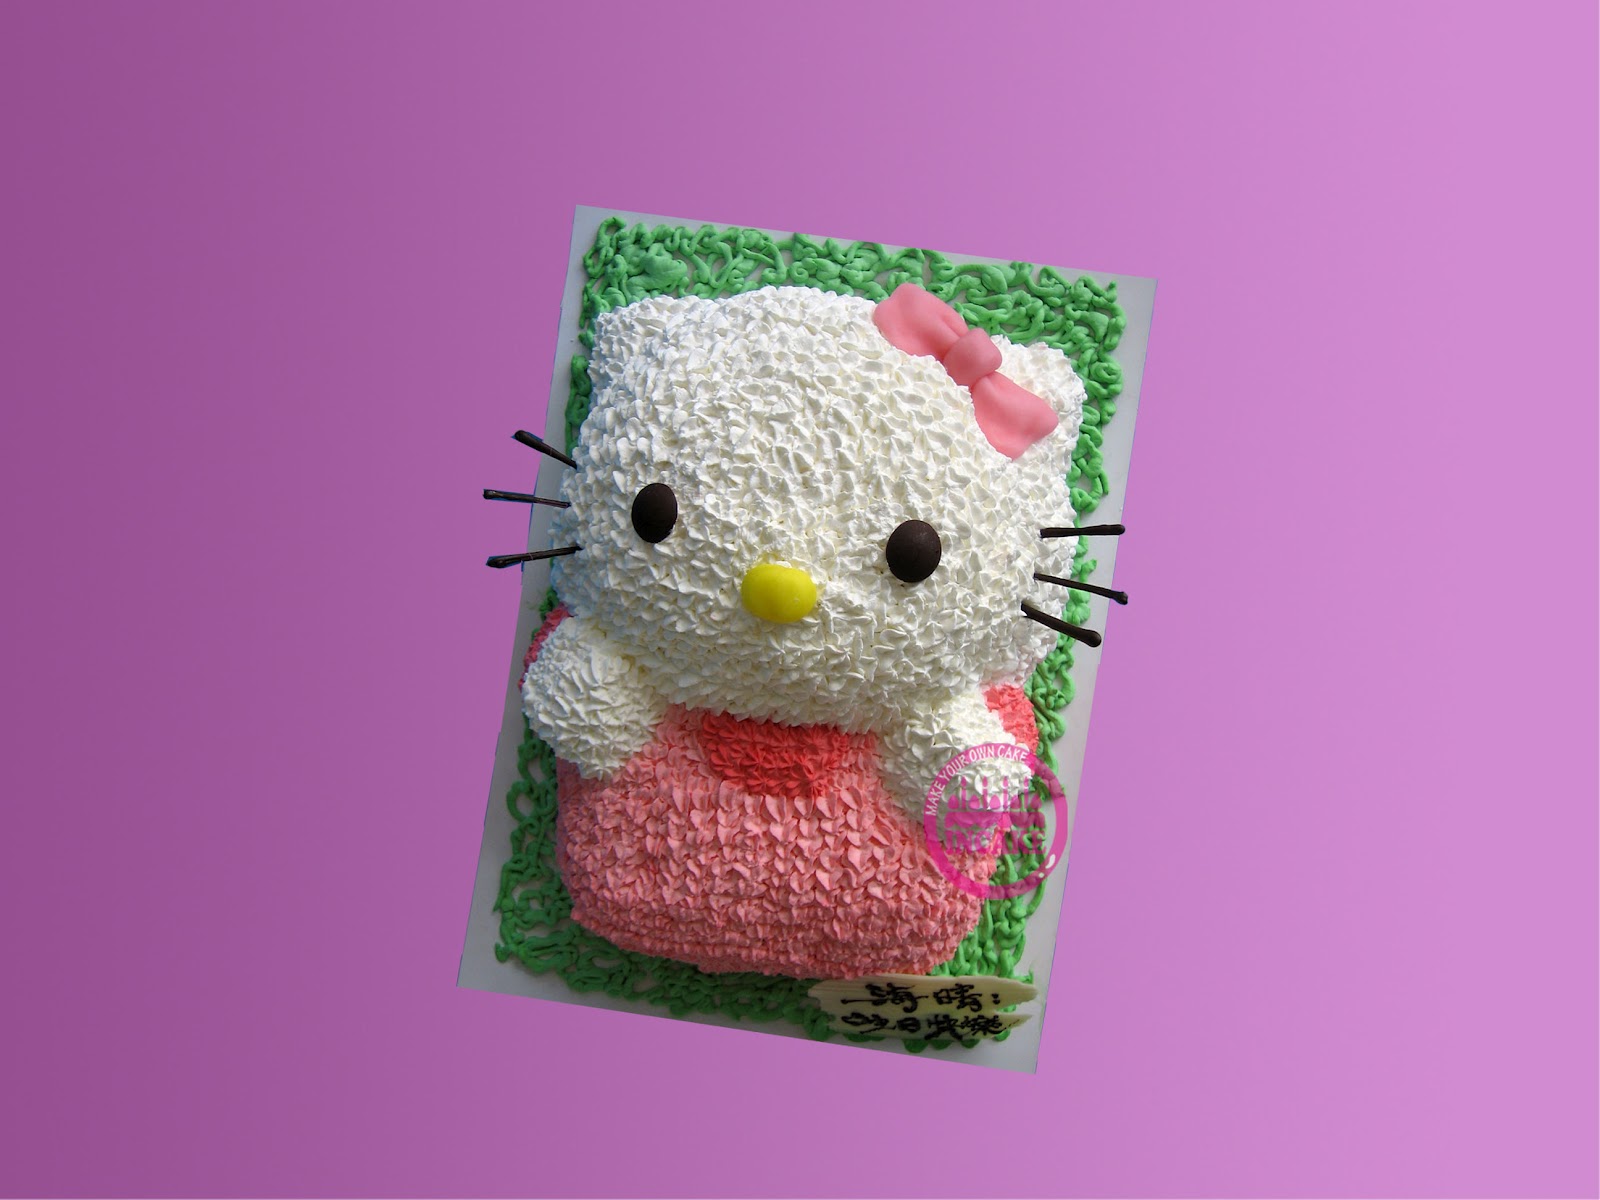 Joyous Cake Company: Hello Kitty pink cake